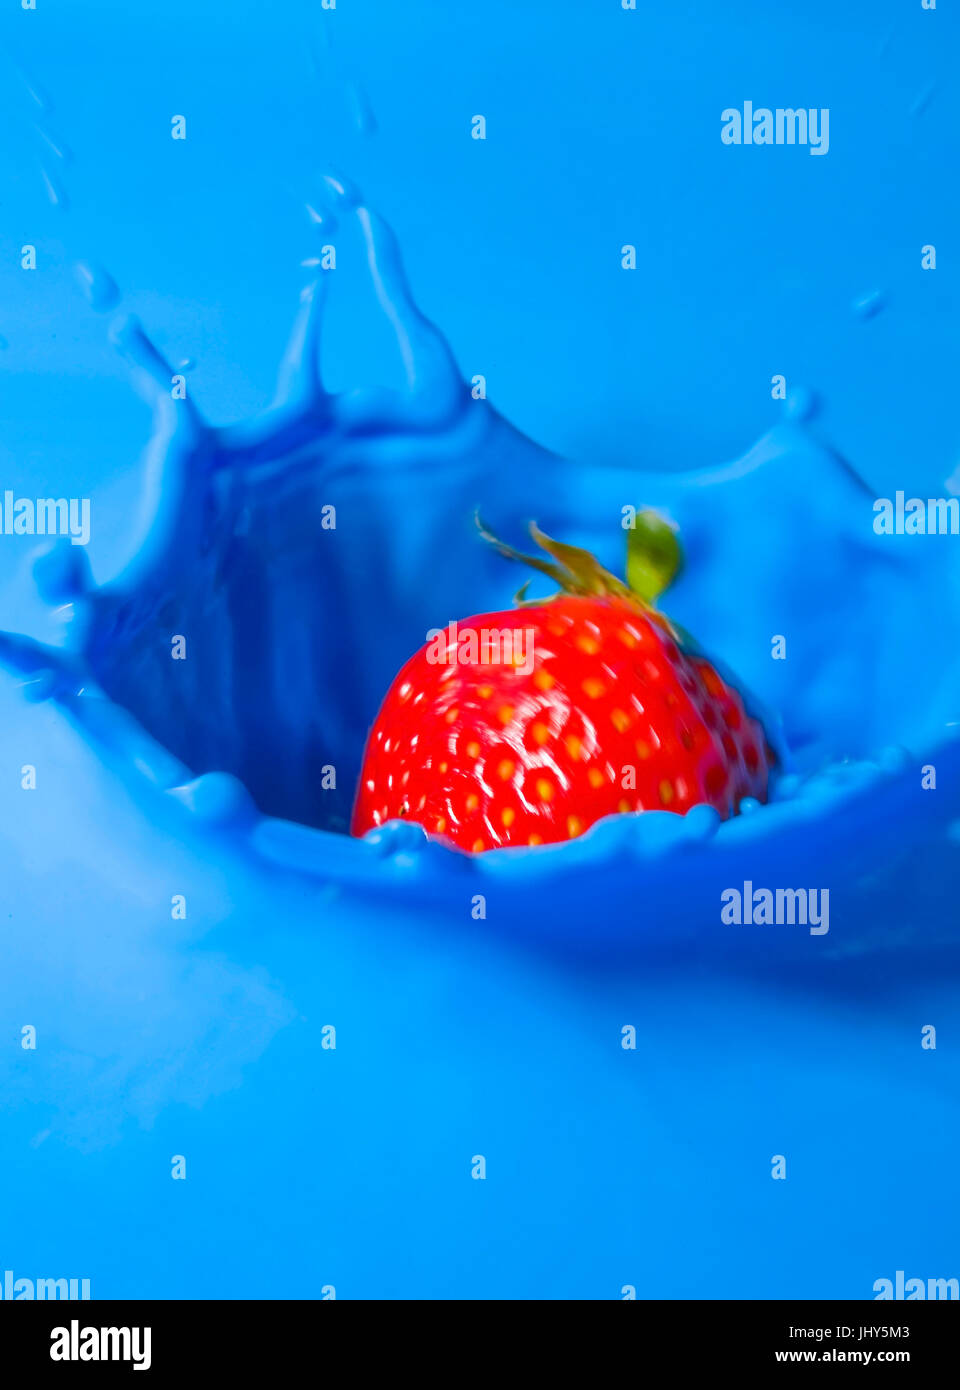 Strawberry falls in blue liquid, Erdbeere fällt in blaue Flüssigkeit Stock Photo